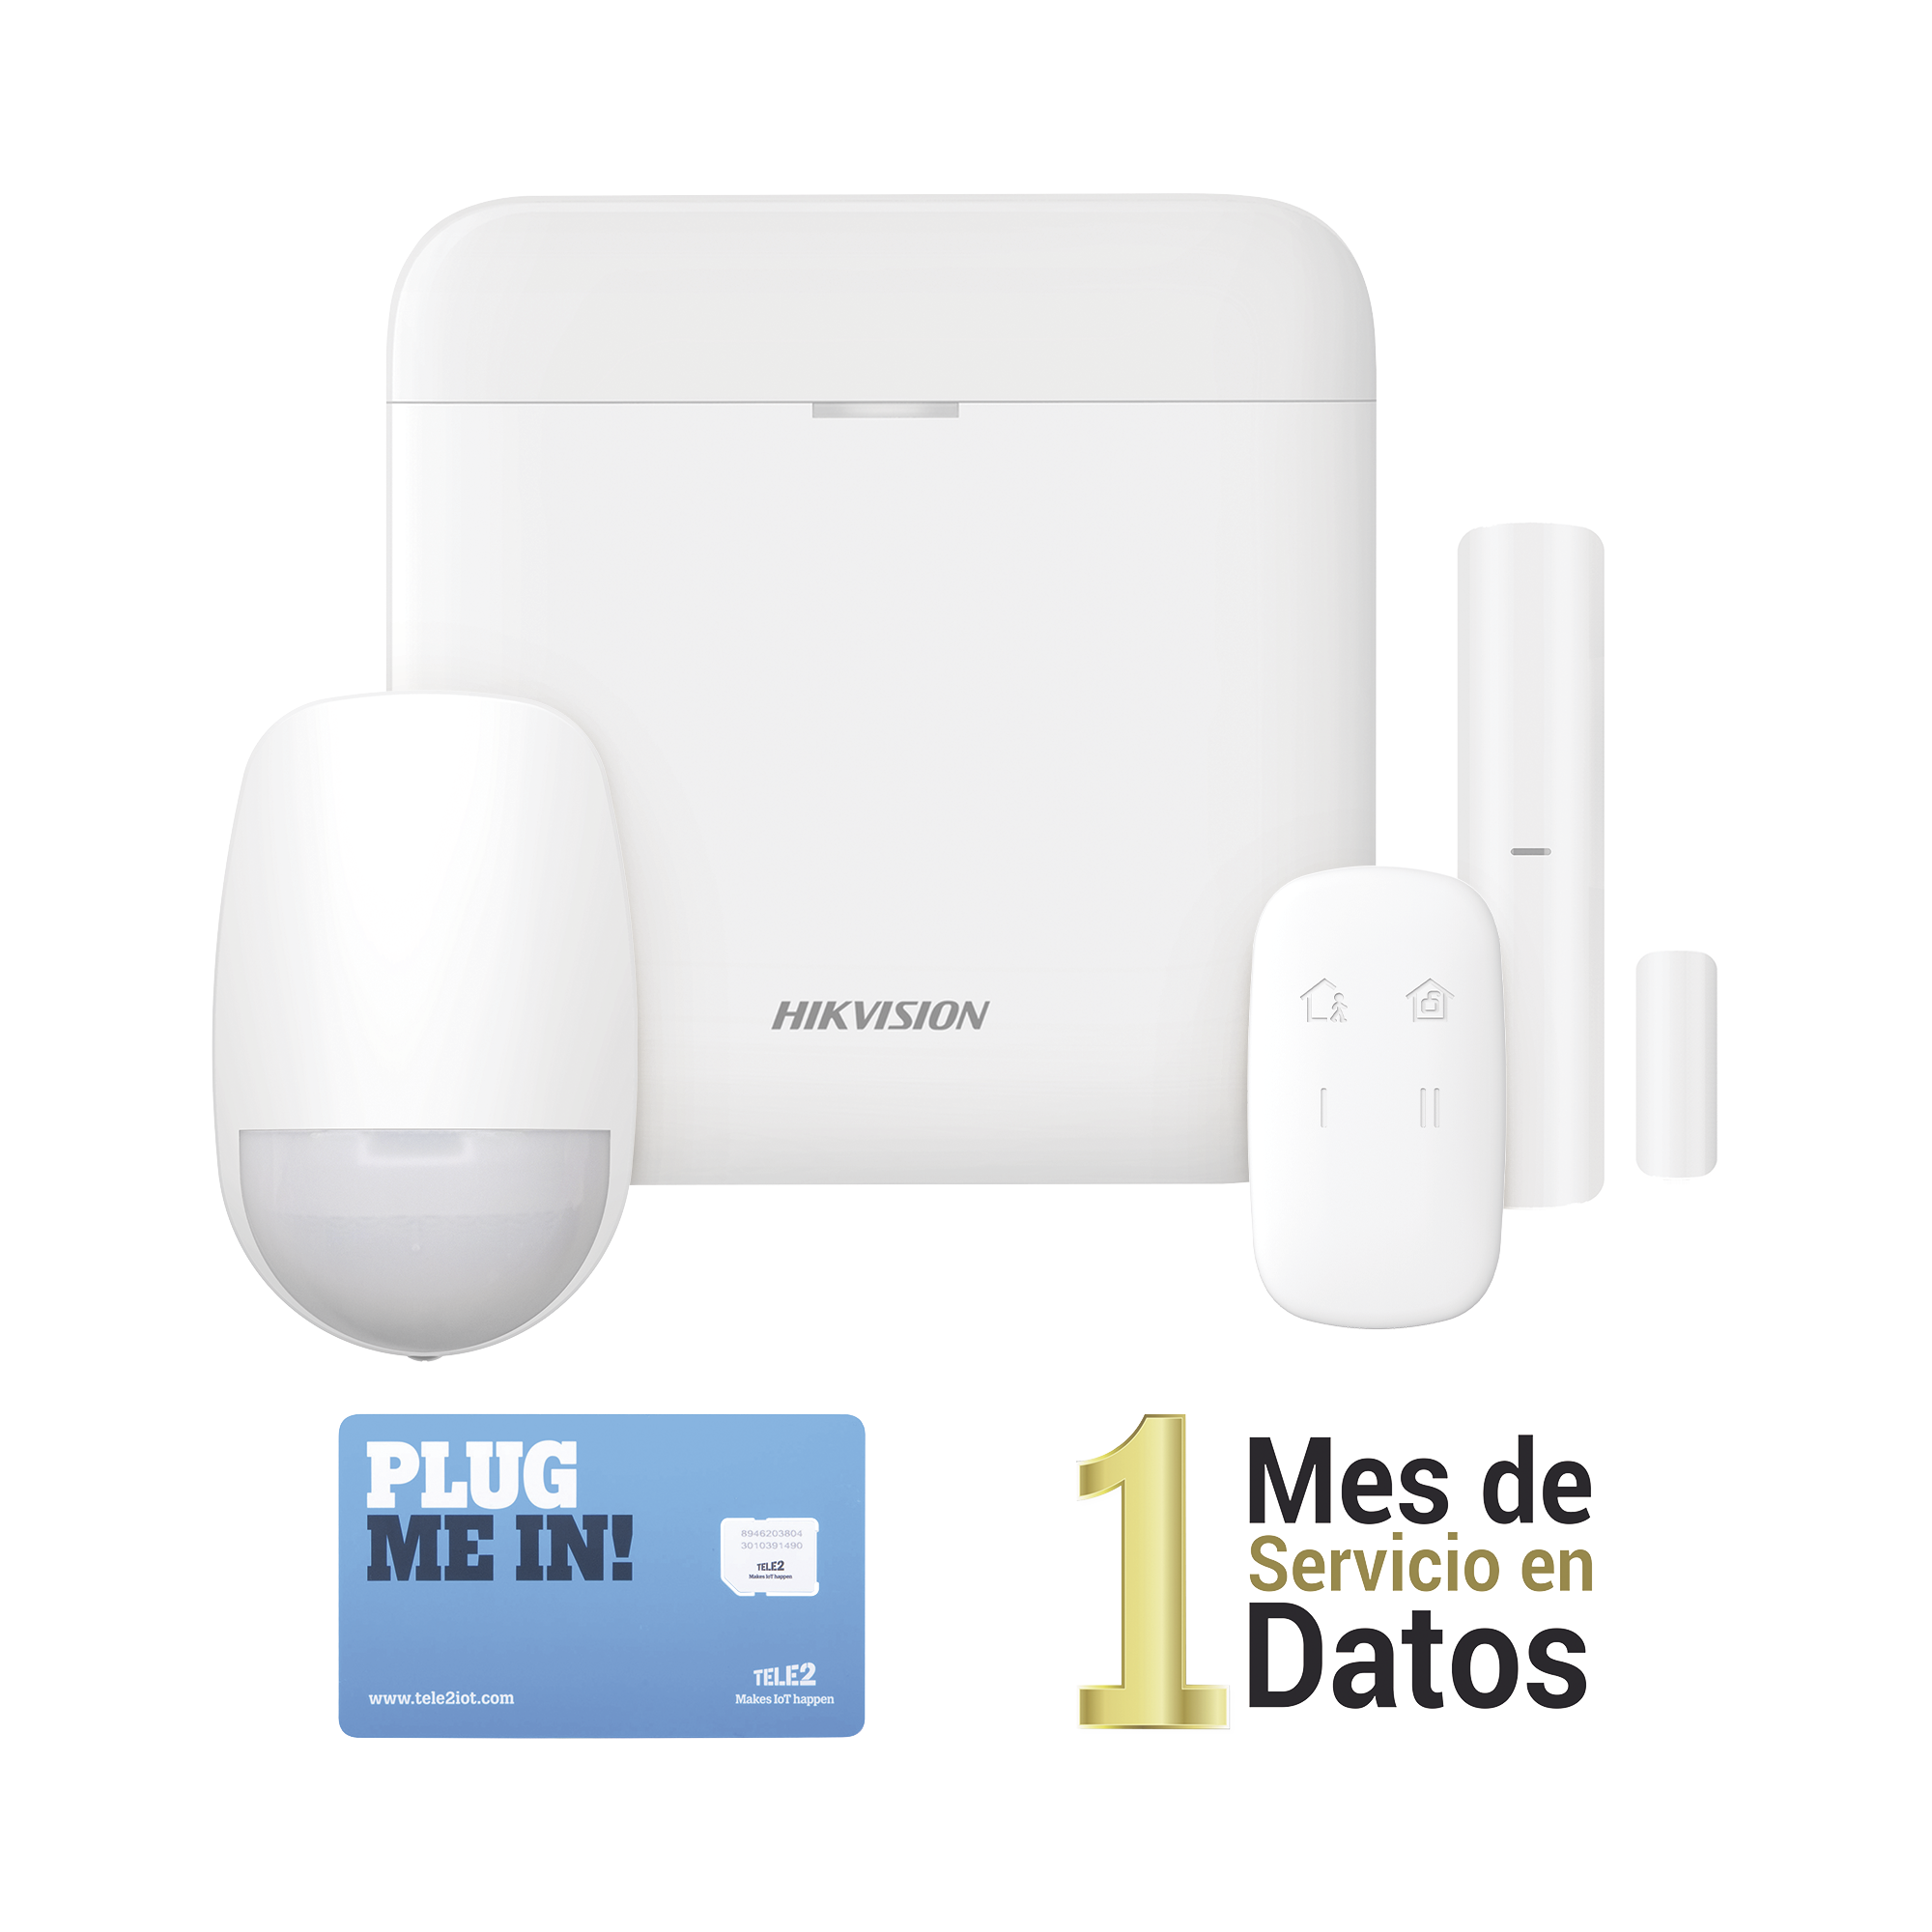 (AX PRO) KIT de Alarma AX PRO con GSM (3G/4G) / Incluye: 1 Hub con bateria de respaldo / 1 Sensor PIR / 1 Contacto Magnético / 1 Control Remoto /1 MICROSIM30M2M incluye 1 mes de servicio/ Wi-Fi / Compatible con Hik-Connect P2P